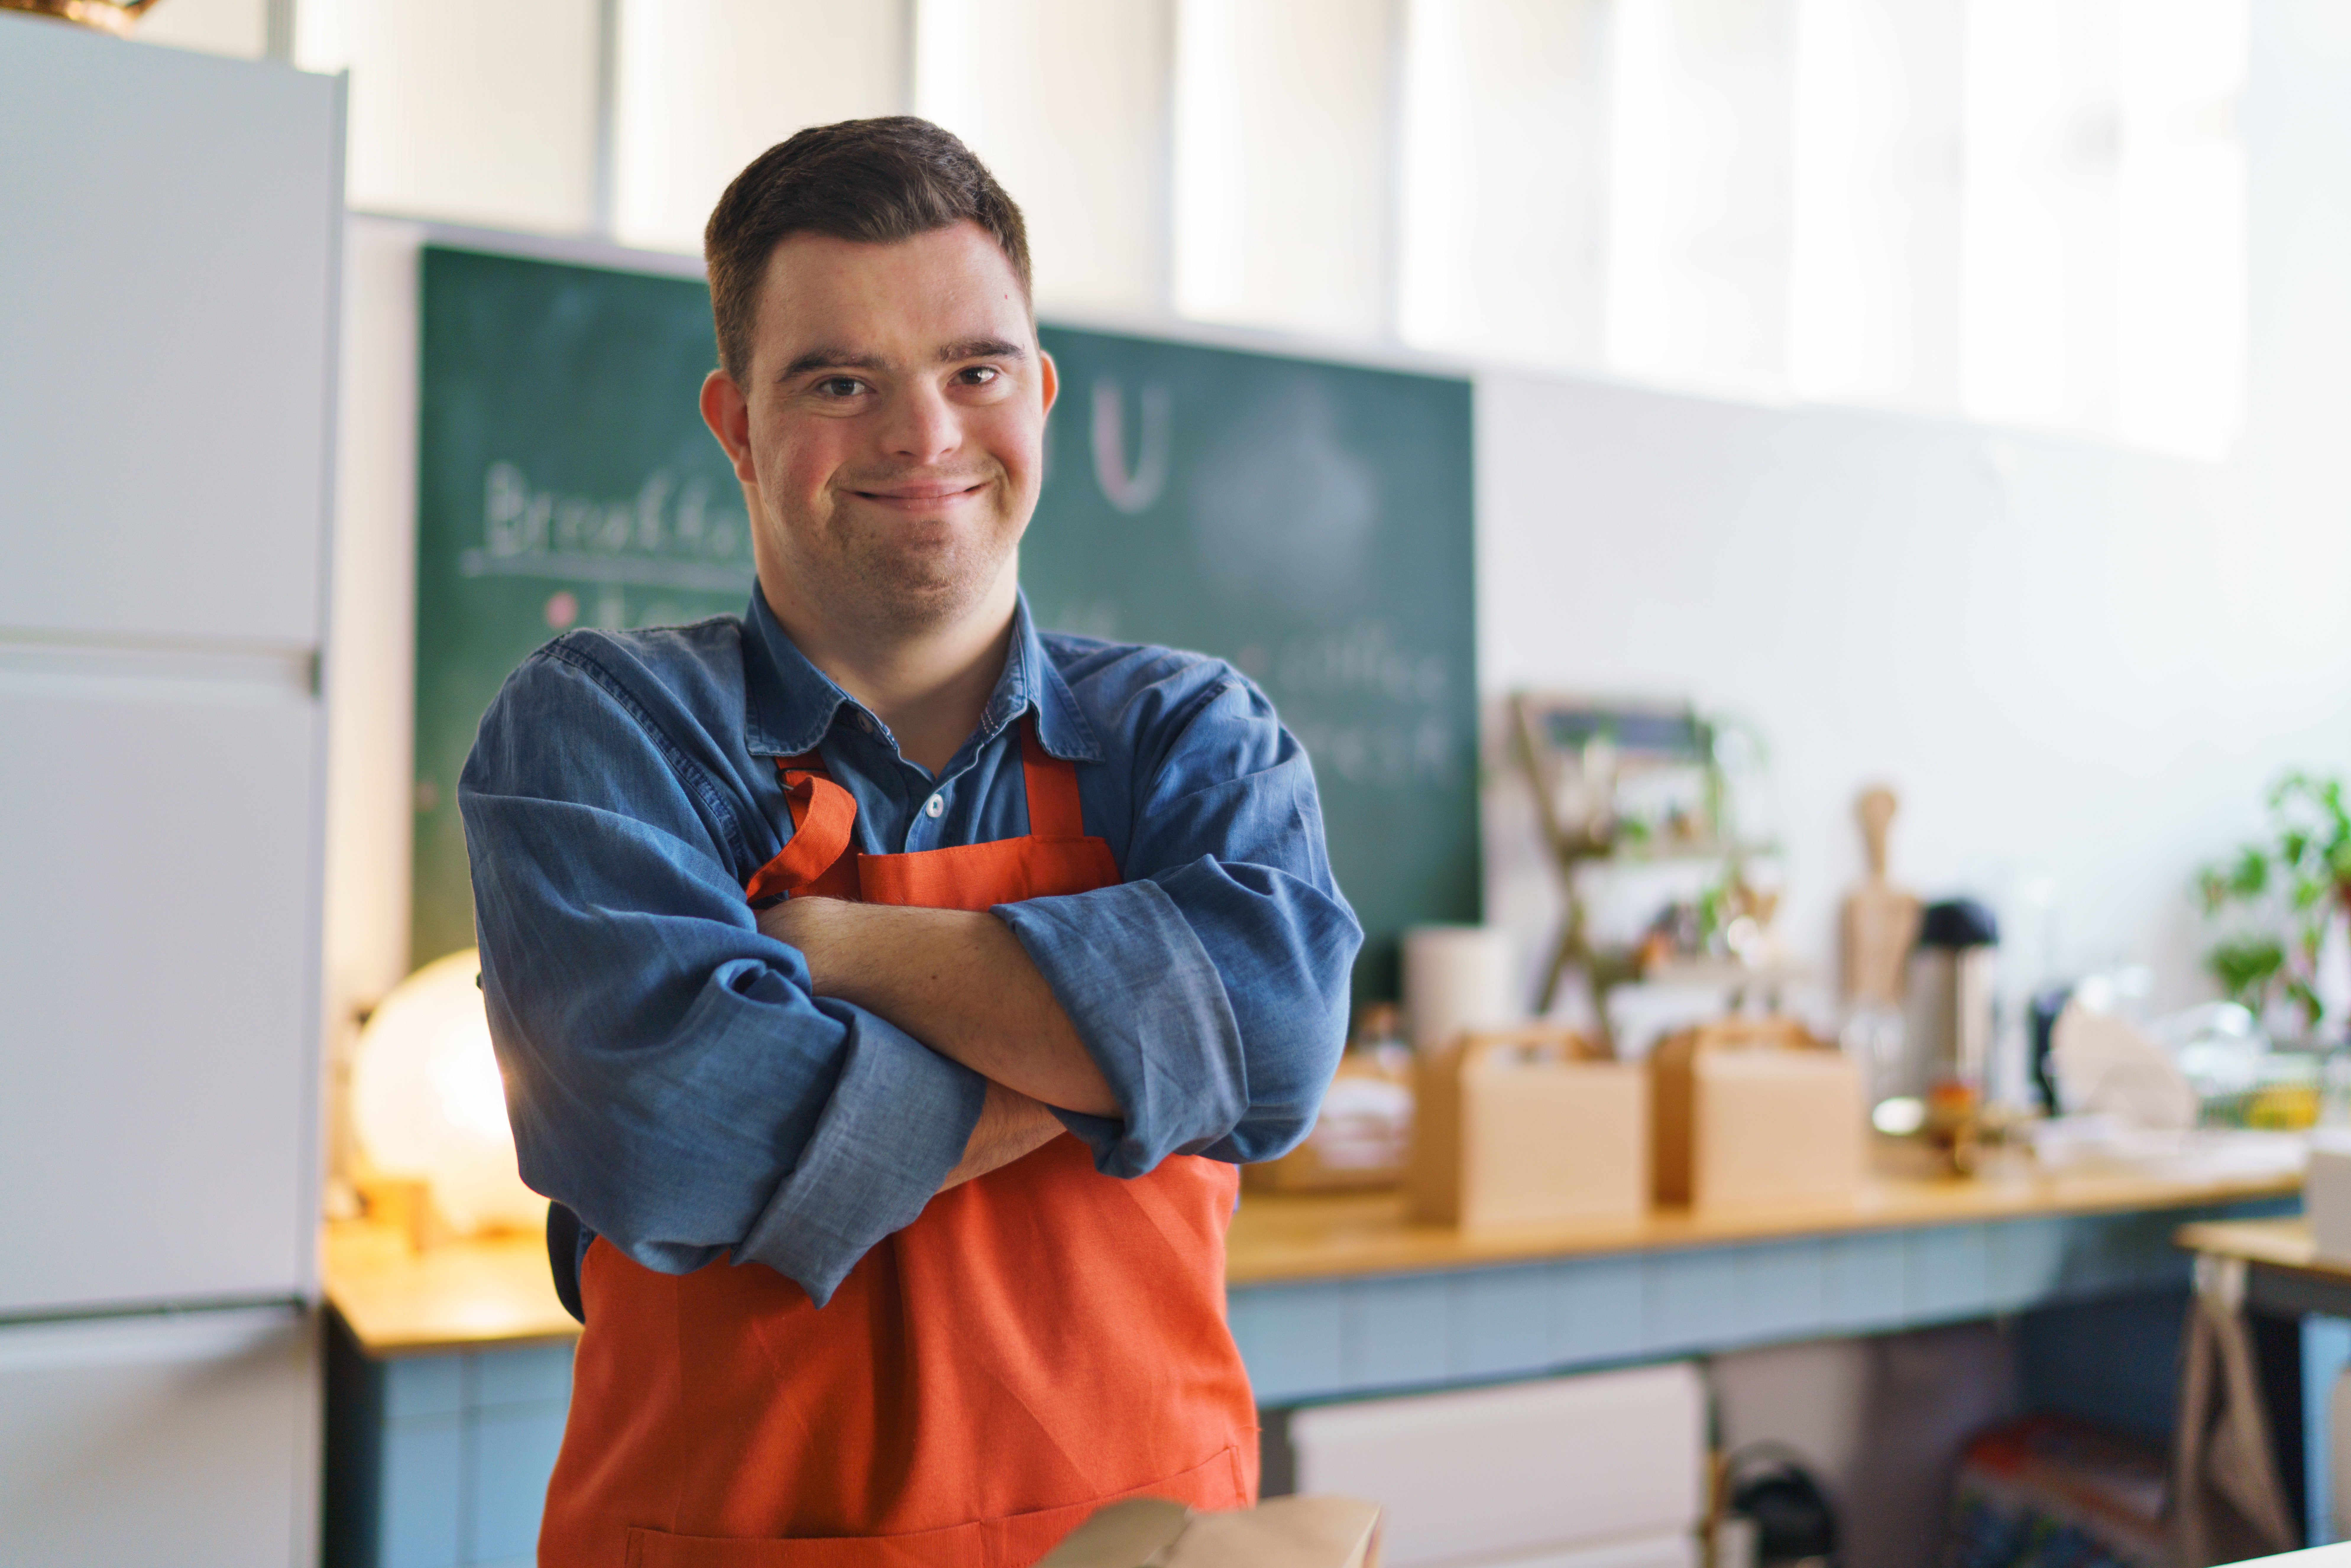 Ein Mann mit Down-Syndrom arbeitet als Kellner in einem Restaurant | Quelle: Shutterstock